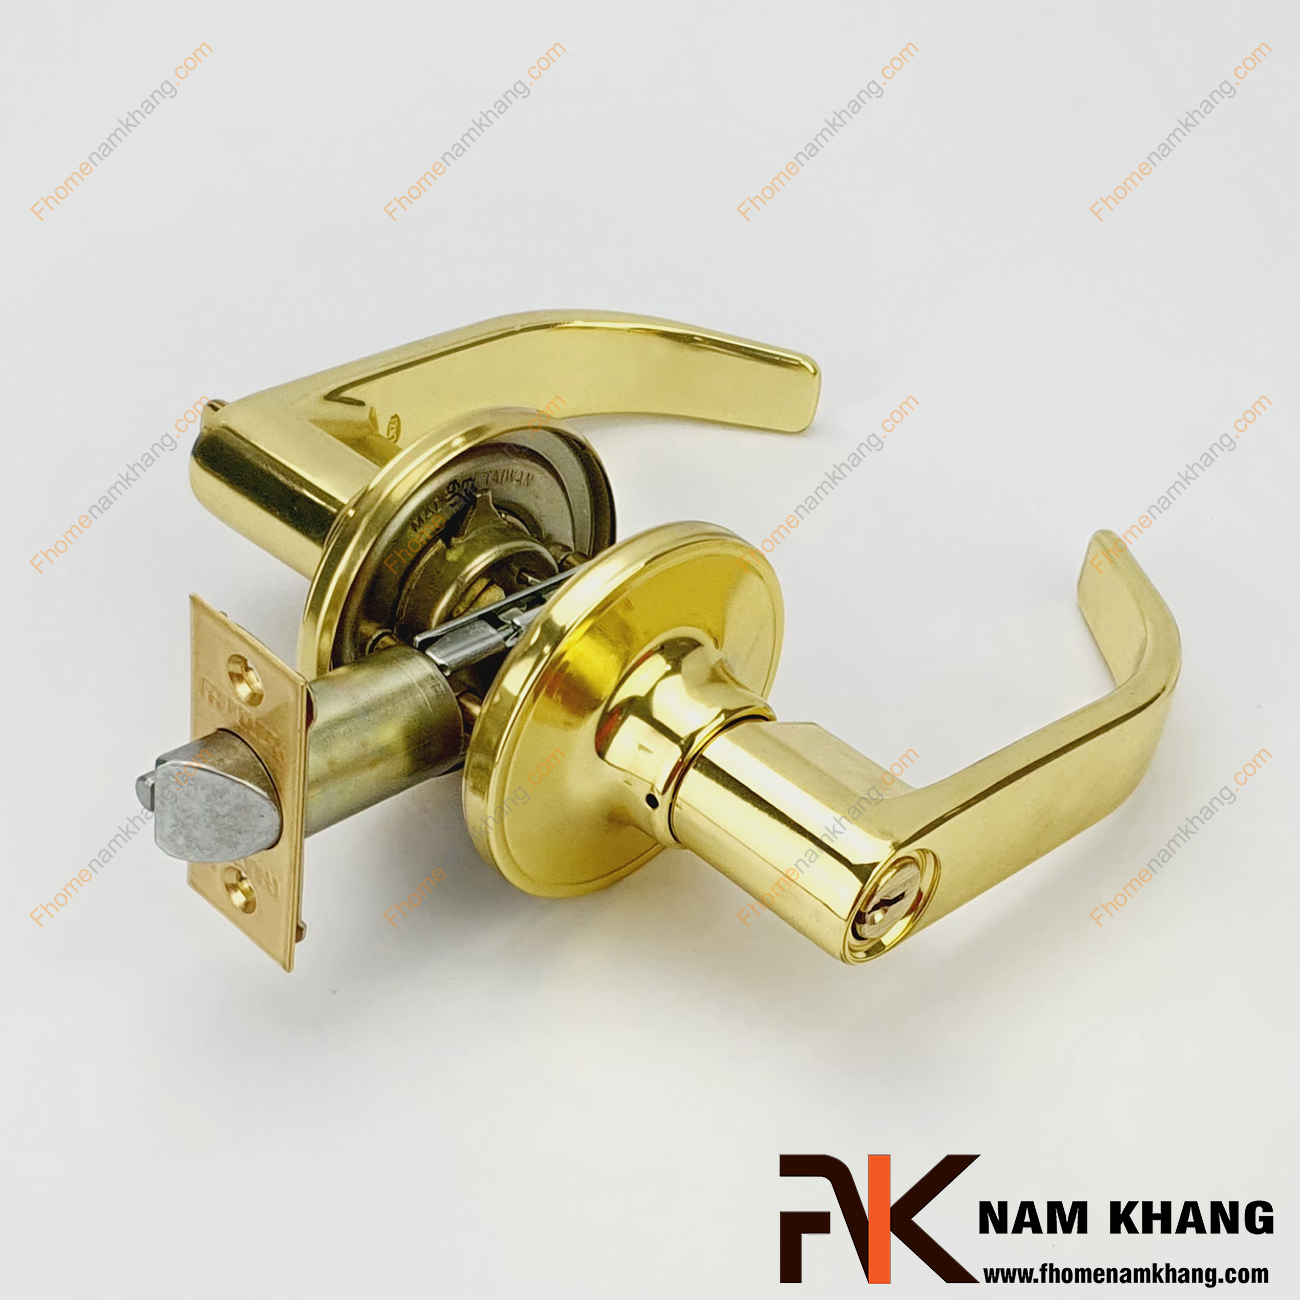 Khóa cửa tay gạt cao cấp màu vàng bóng NK501-VC bao gồm 2 đầu, 1 đầu vặn chốt và 1 đầu dùng chìa, dùng cho cửa phòng, cửa nhà vệ sinh,...